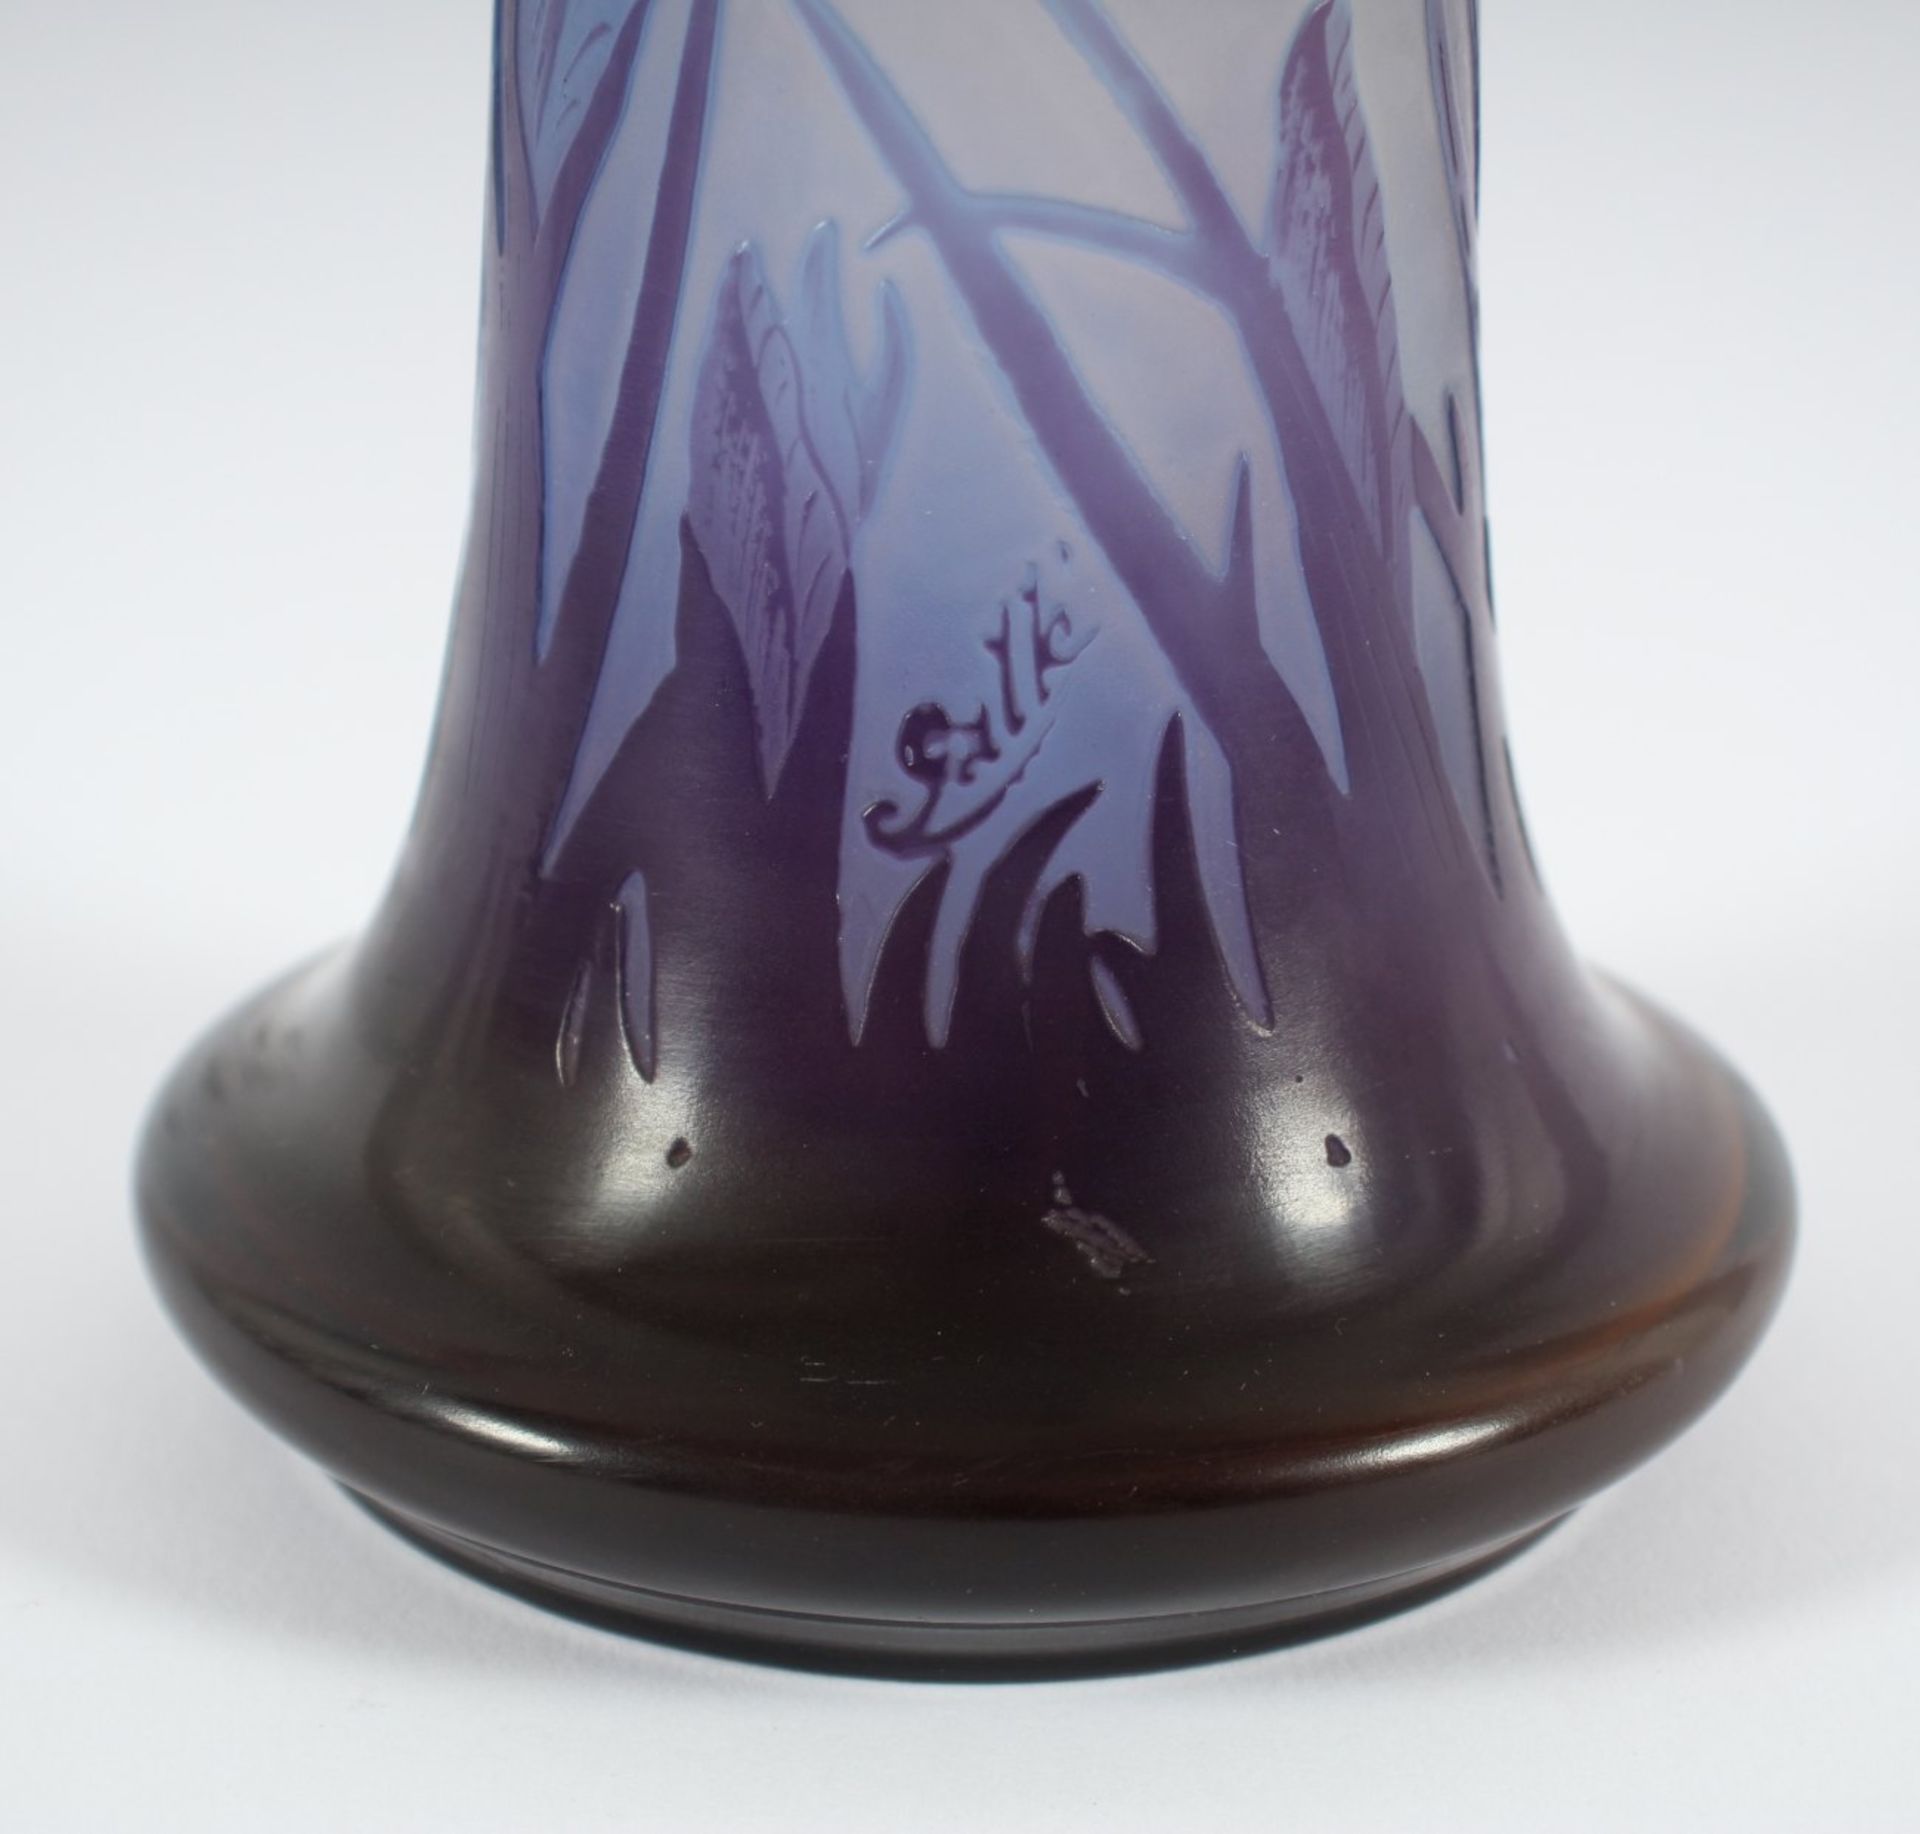 JUGENDSTILVASE, farbloses Glas, violett überfangen, geätztes Irisdekor, H 24,5, signiert GALLÉ, um - Image 2 of 2